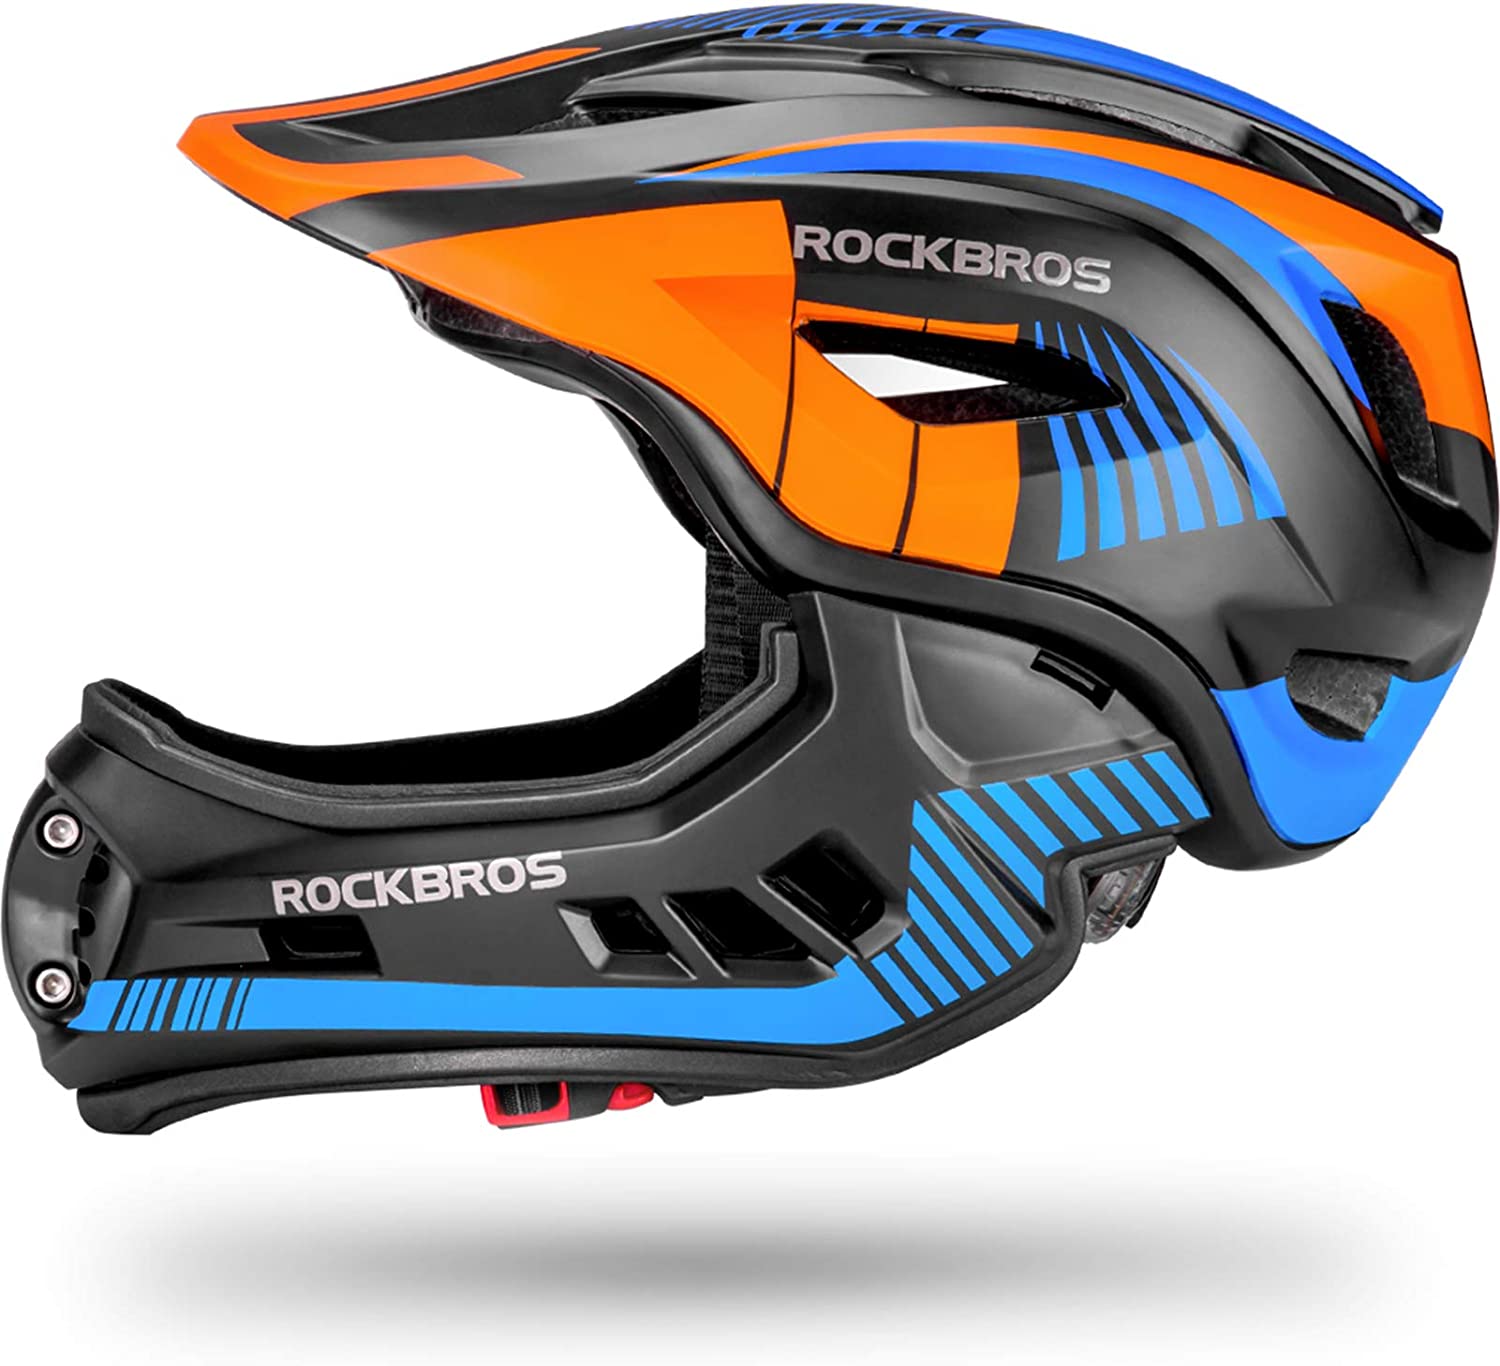 ROCKBROS Kids Full Face Helmet Detachable for Youth Child Boys Girls Ages 3-16